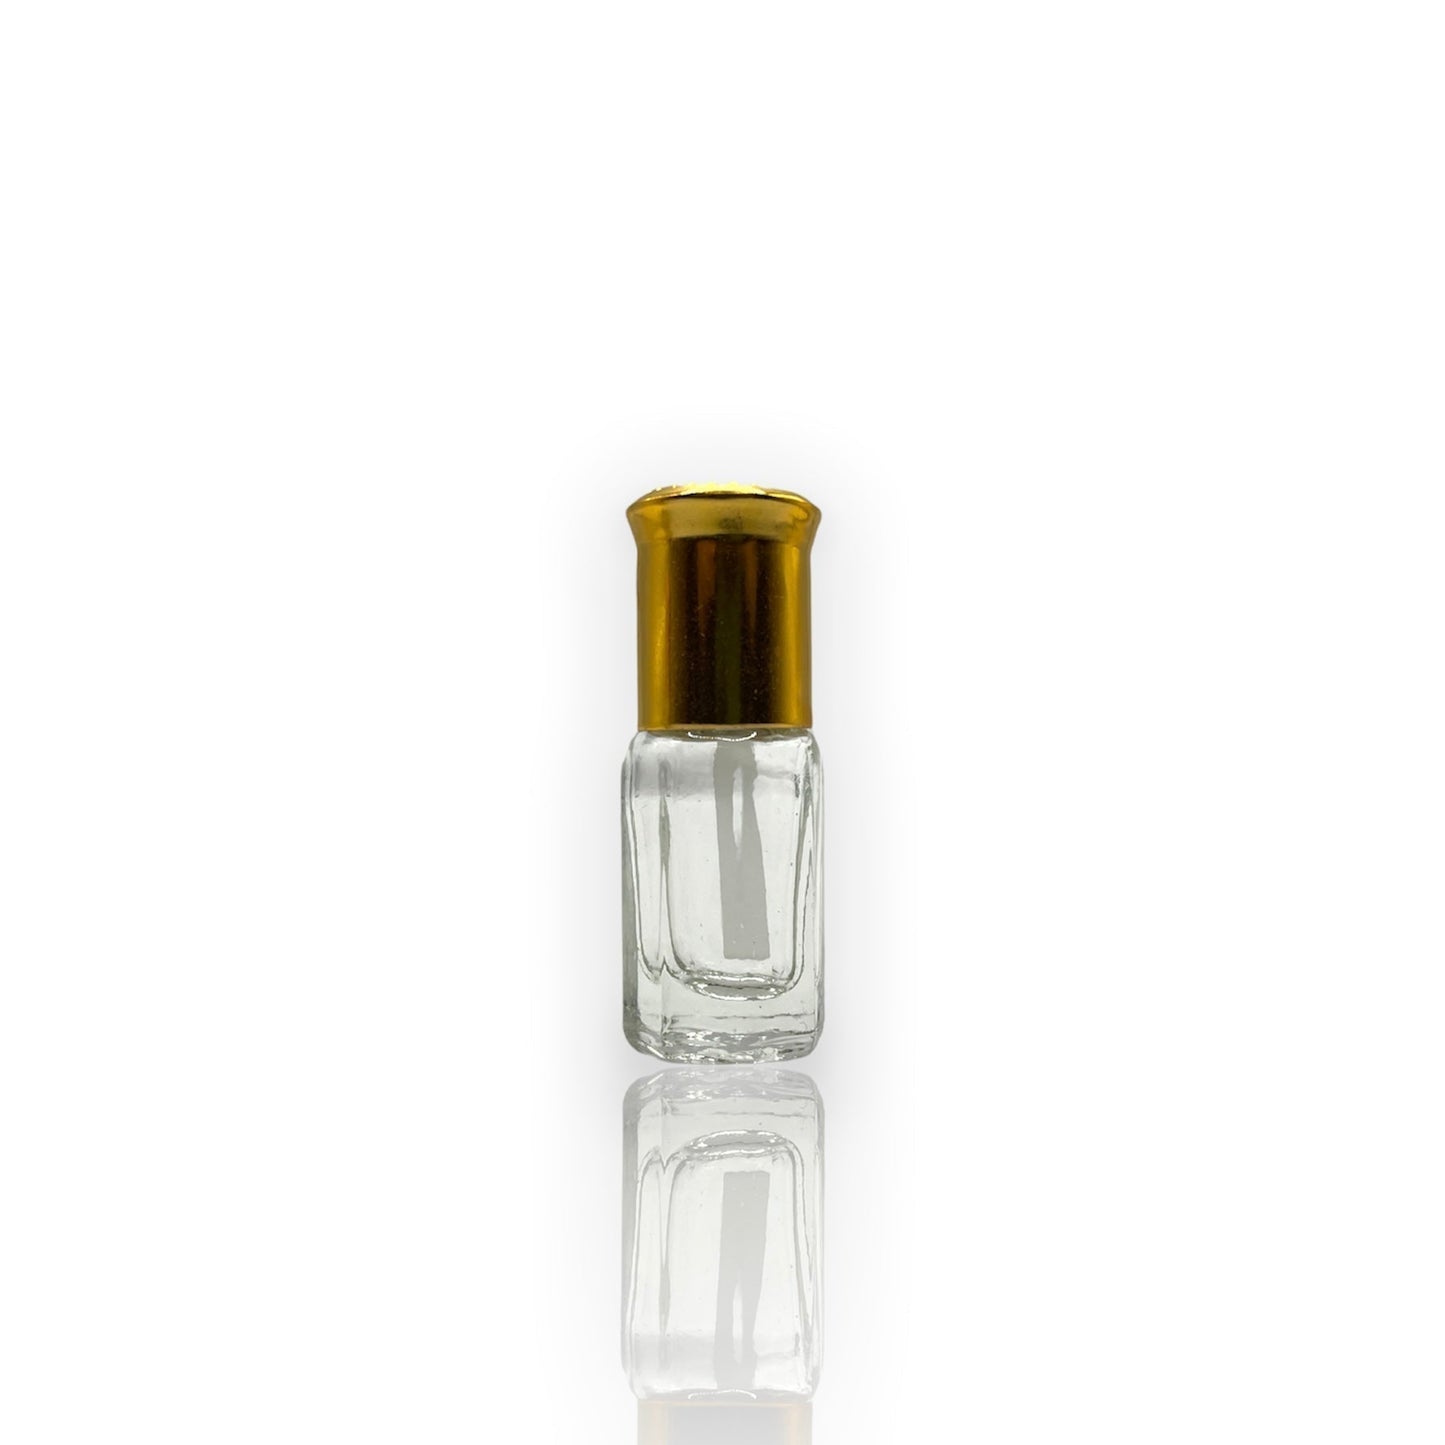 M-10 Öl Parfüm *Inspiriert Von Tuscan Leather